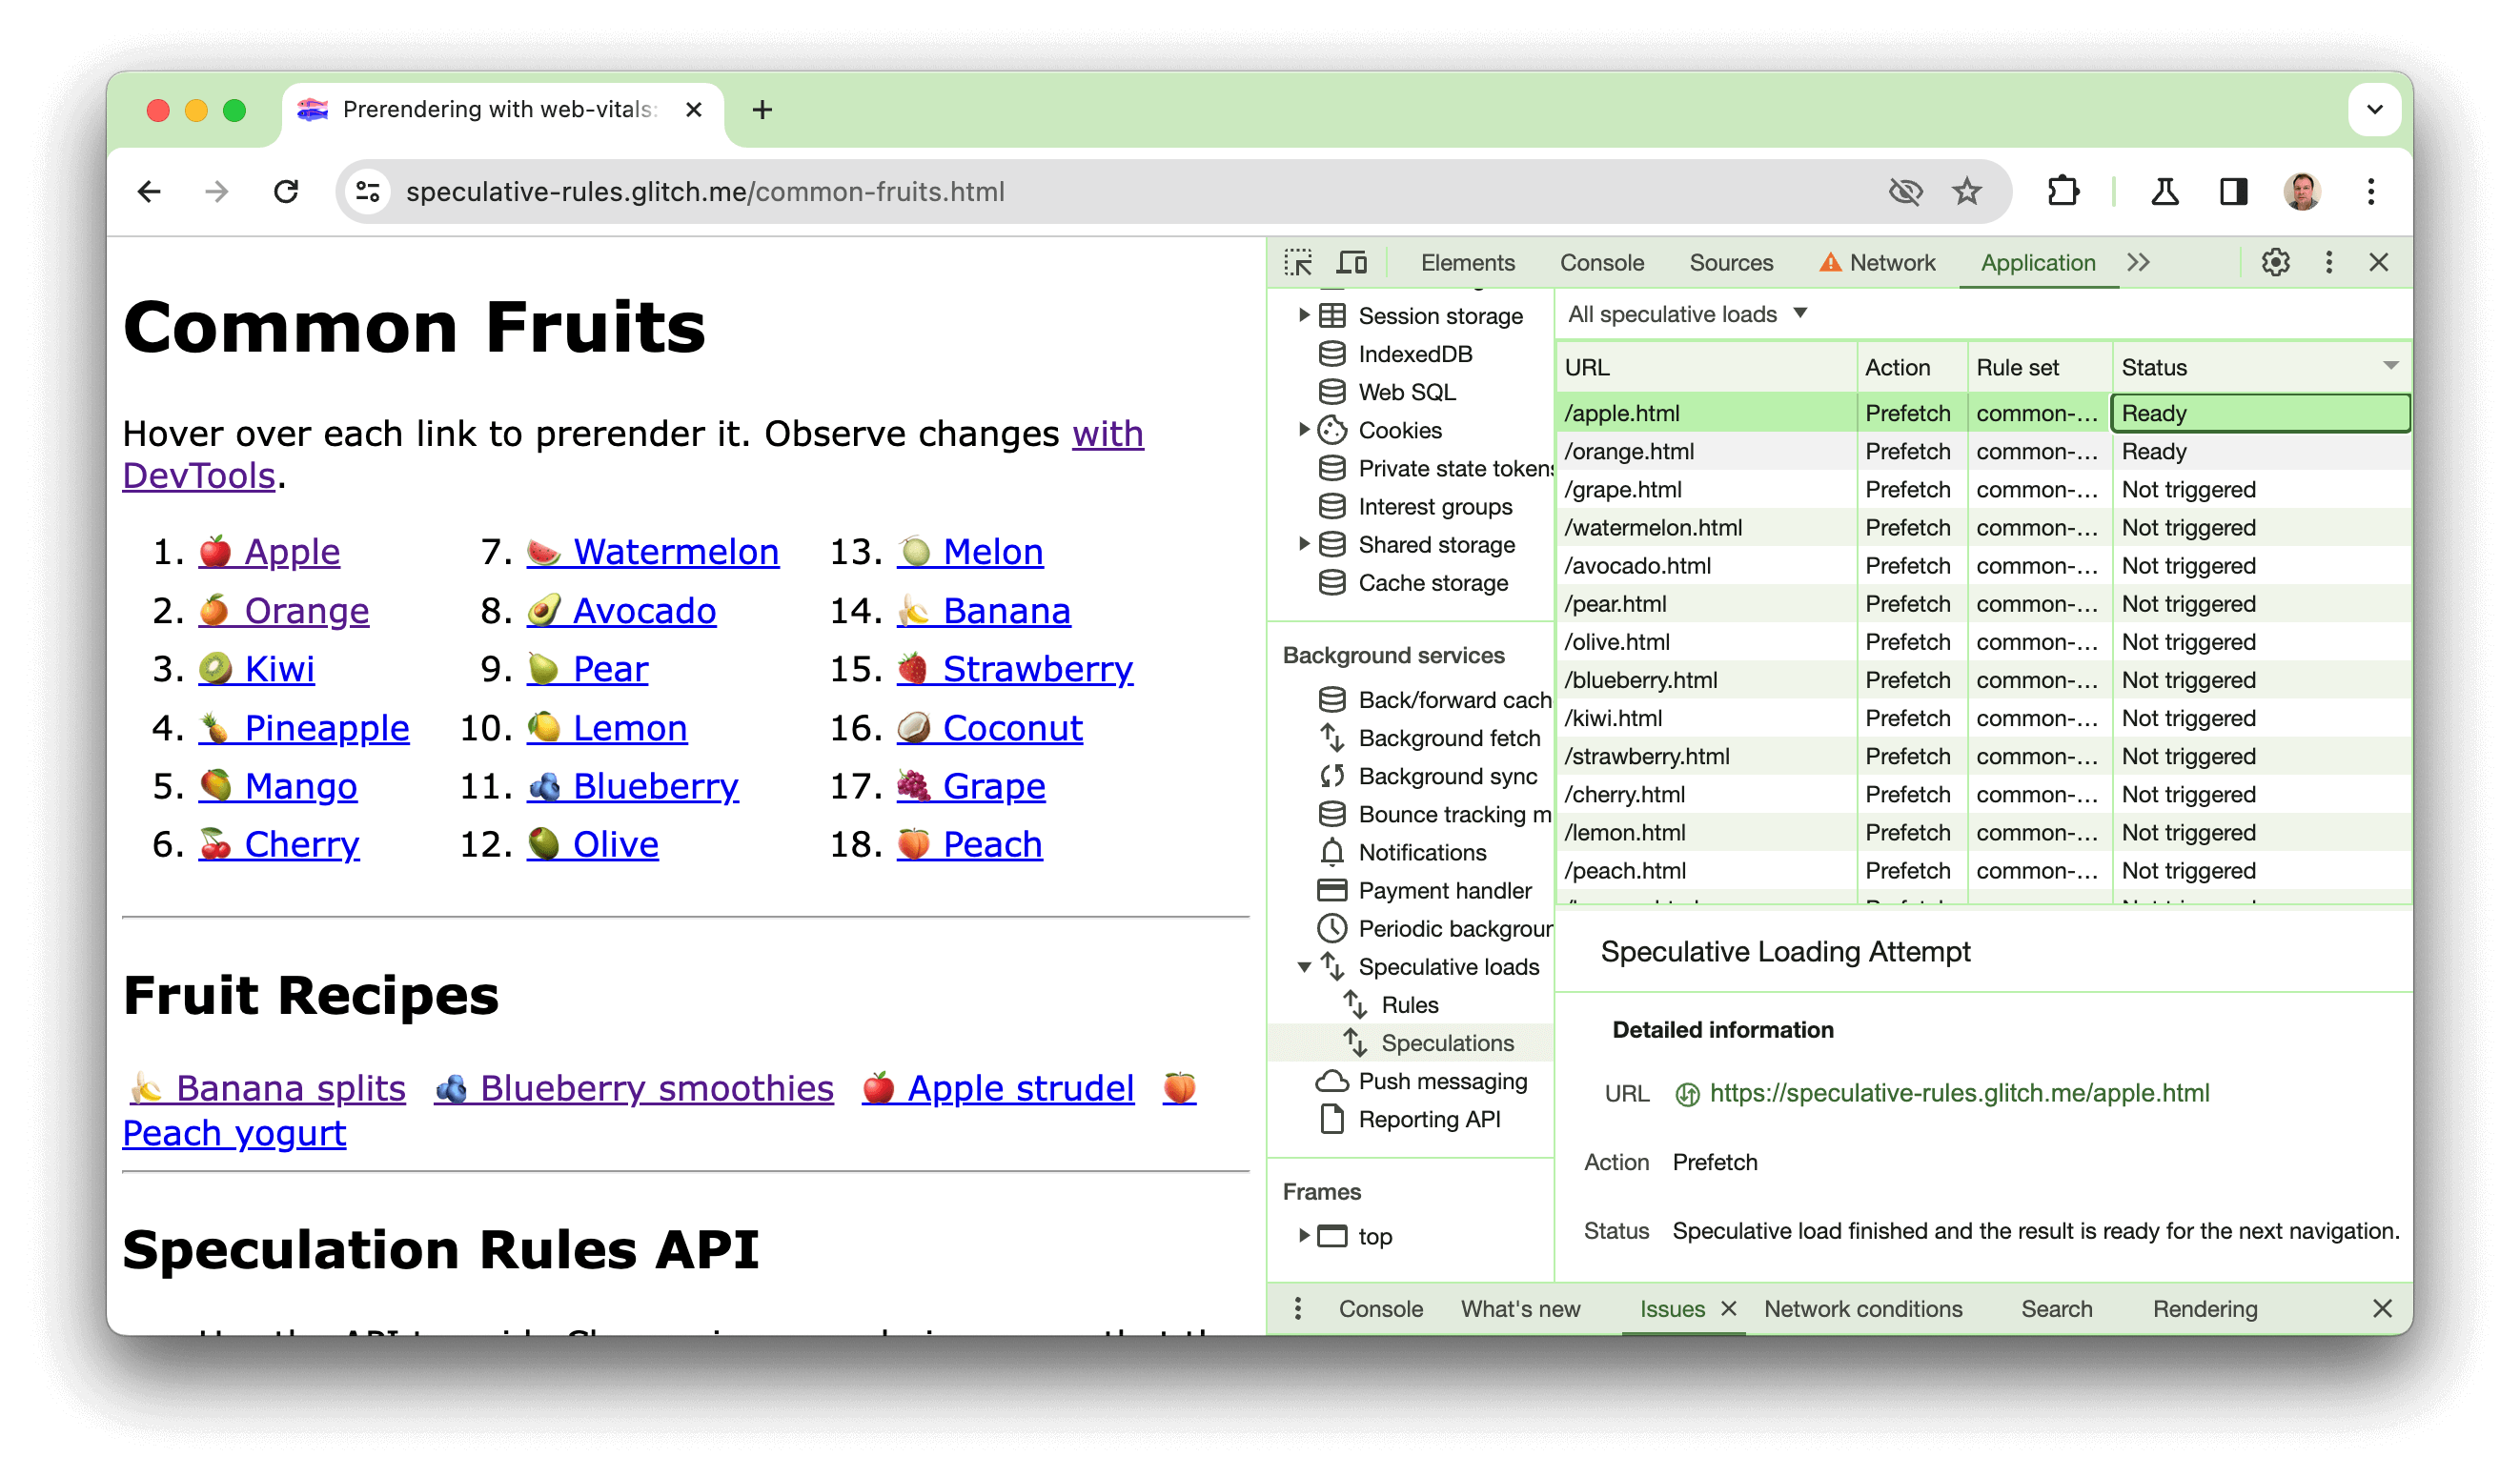 צילום מסך של אתר להדגמה שנוצר בתקלה שבה מפורטים מספר קישורים המתויגים עם פירות. כלי הפיתוח פתוחים ומוצגים בהם שניים מהקישורים (apple.html ו-כתום.html) כבר עובדו מראש בהצלחה.